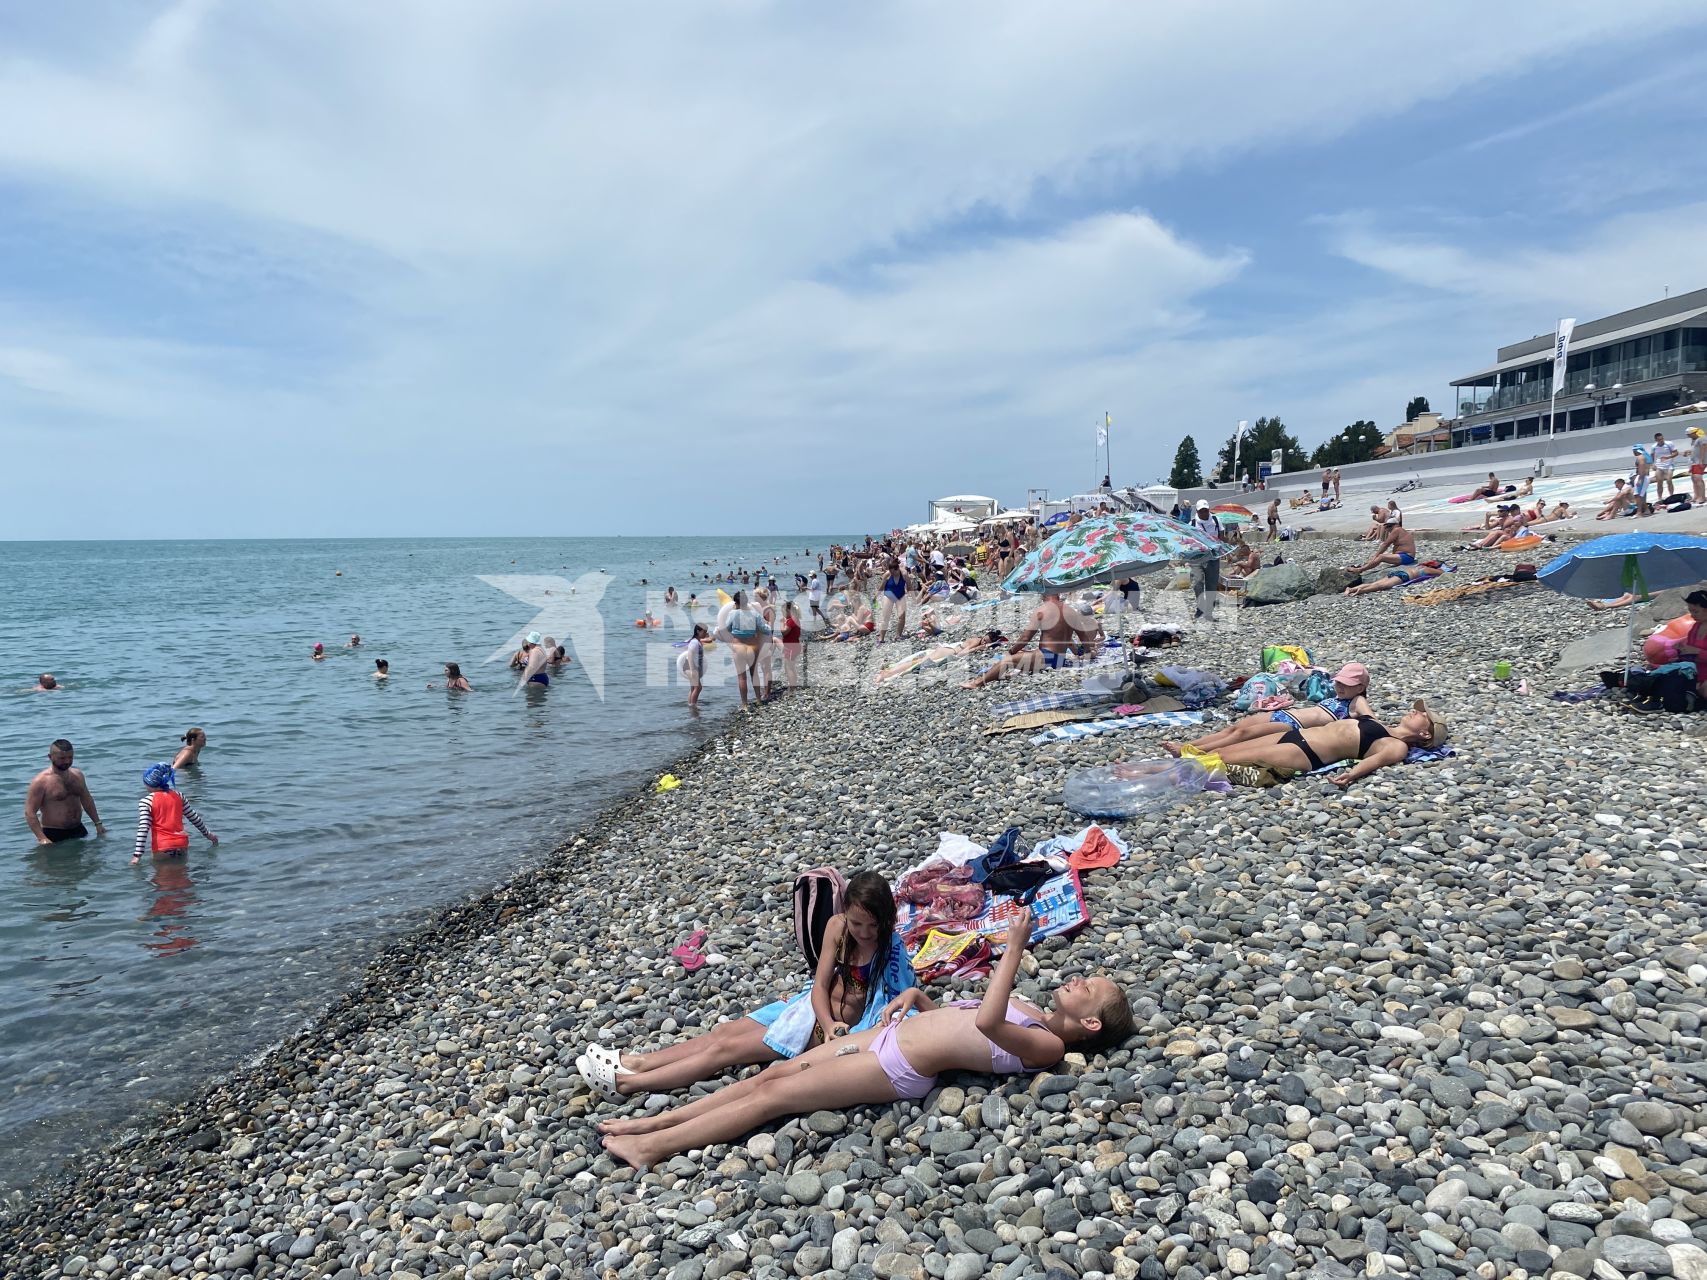 Сочи. Отдыхающие на пляже Черноморского побережья.